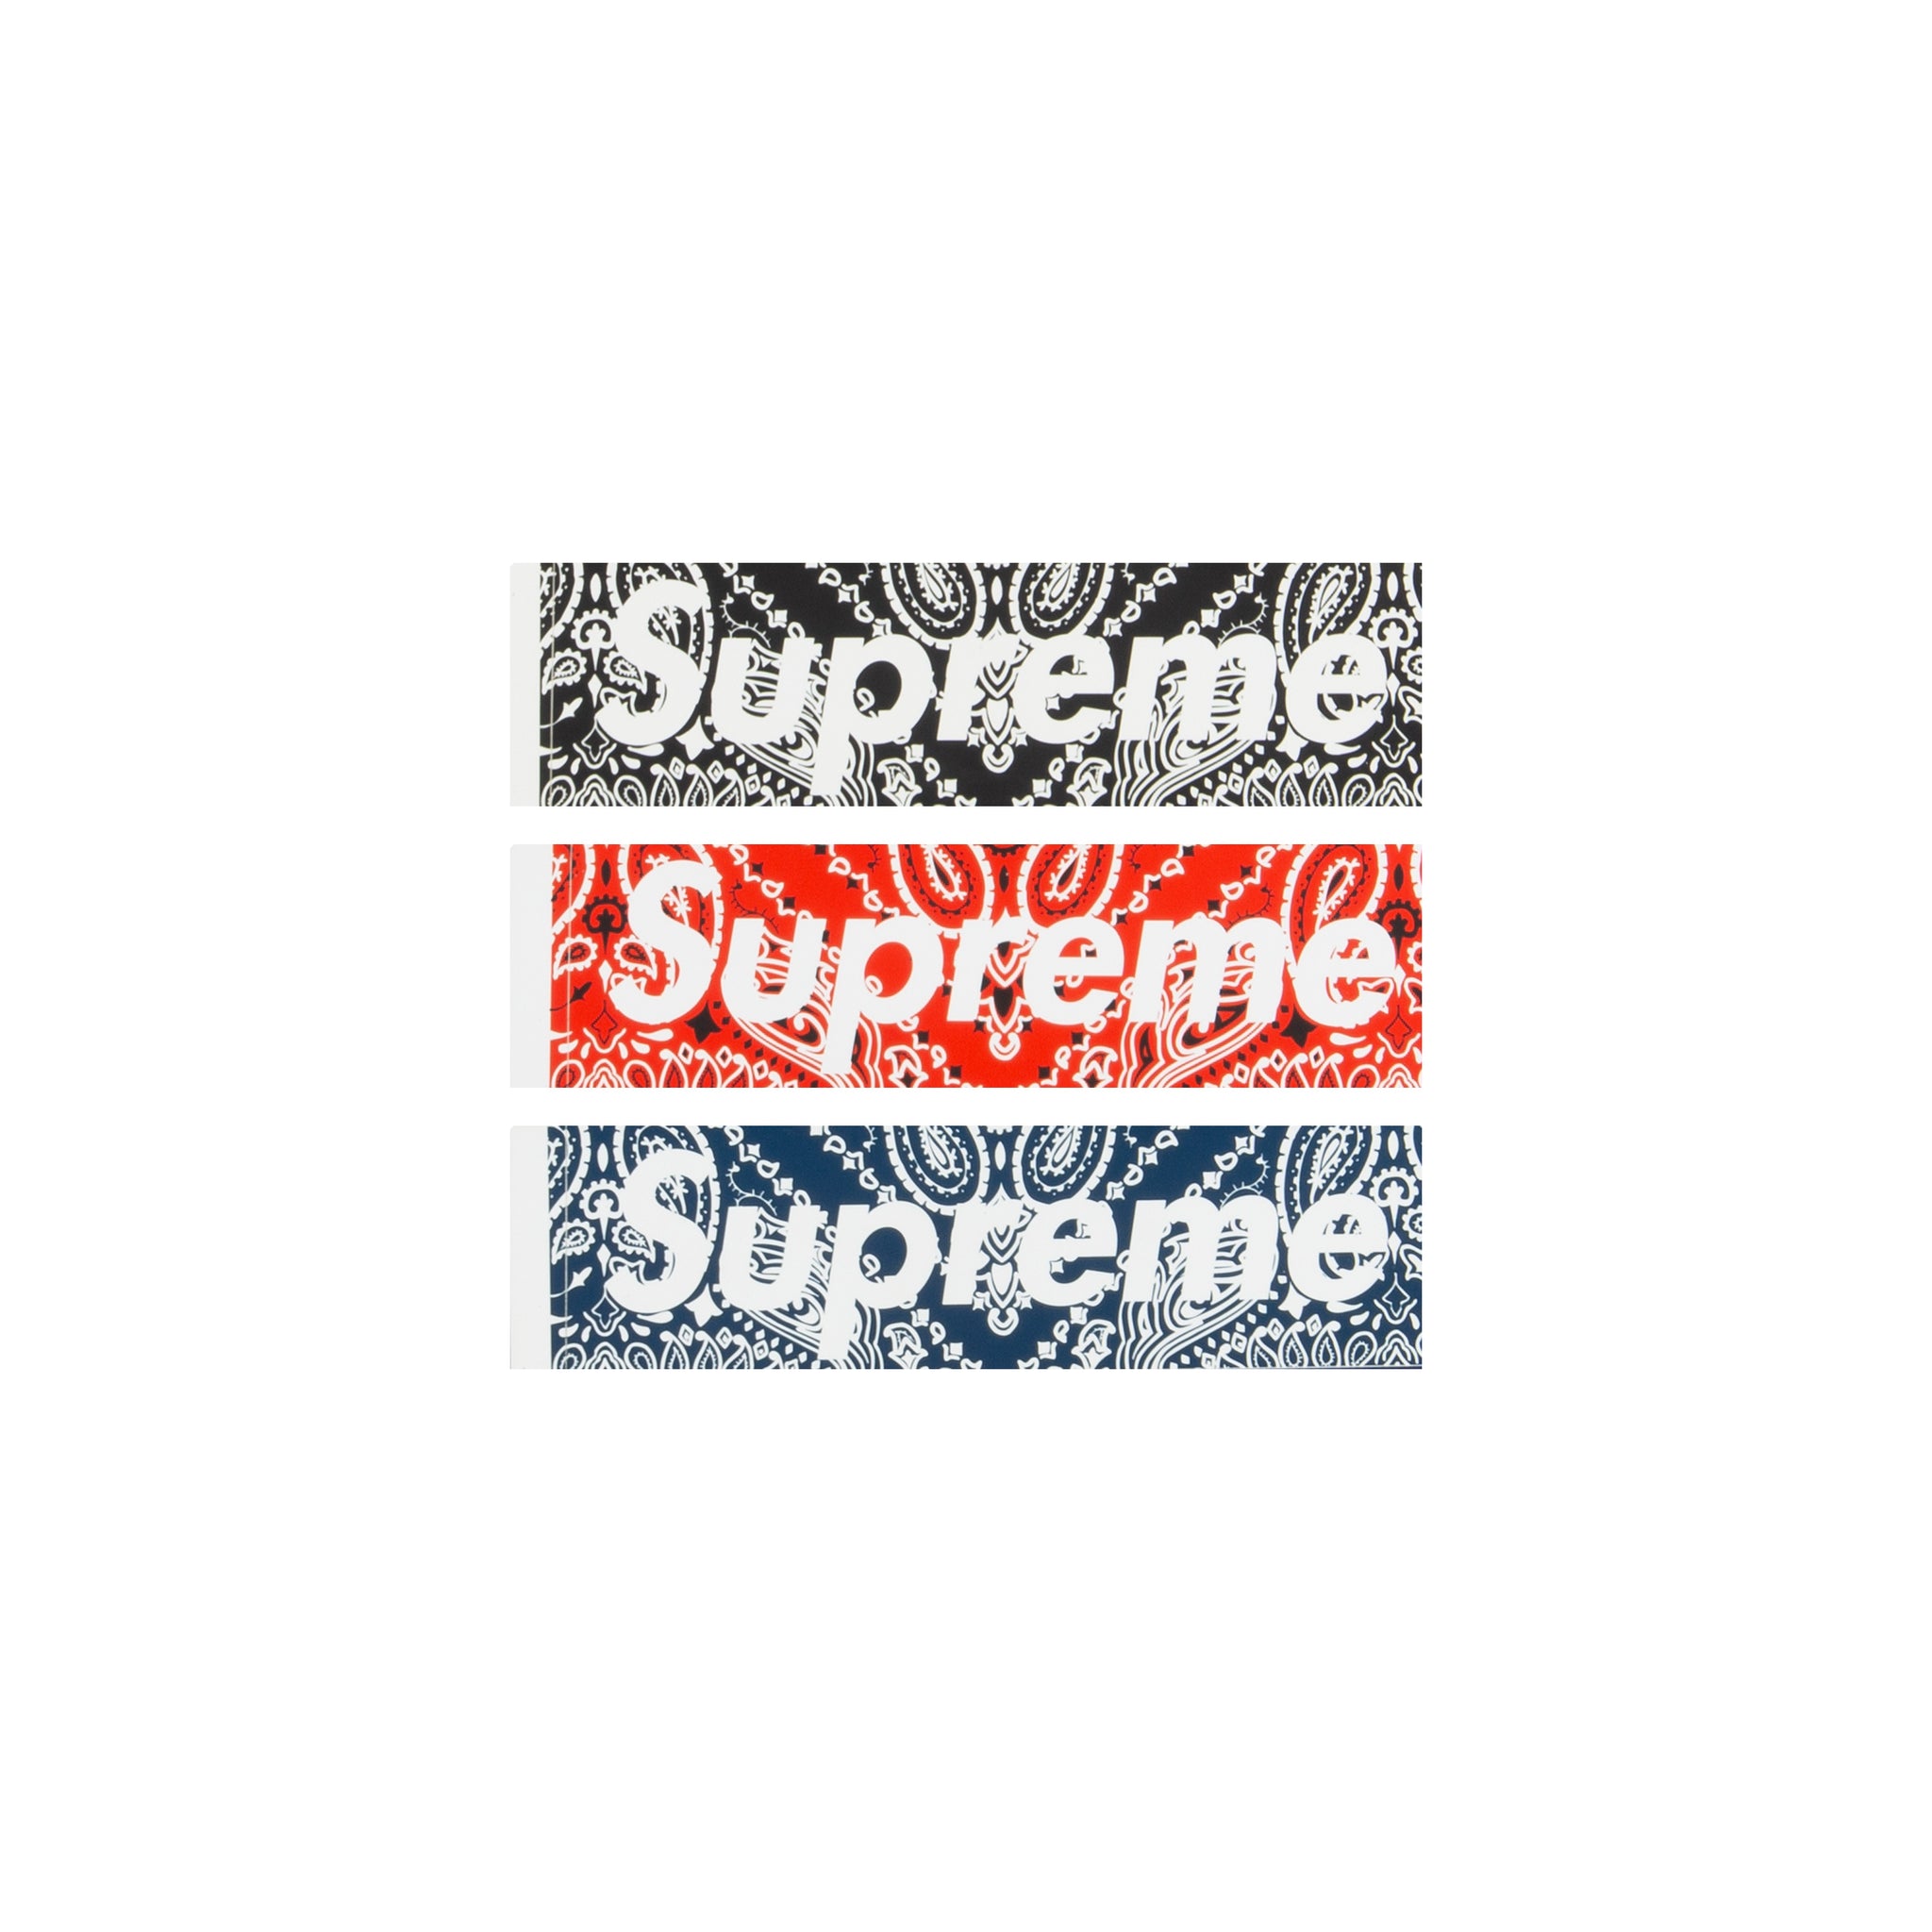 Supreme Box Logo Sticker Collection, All